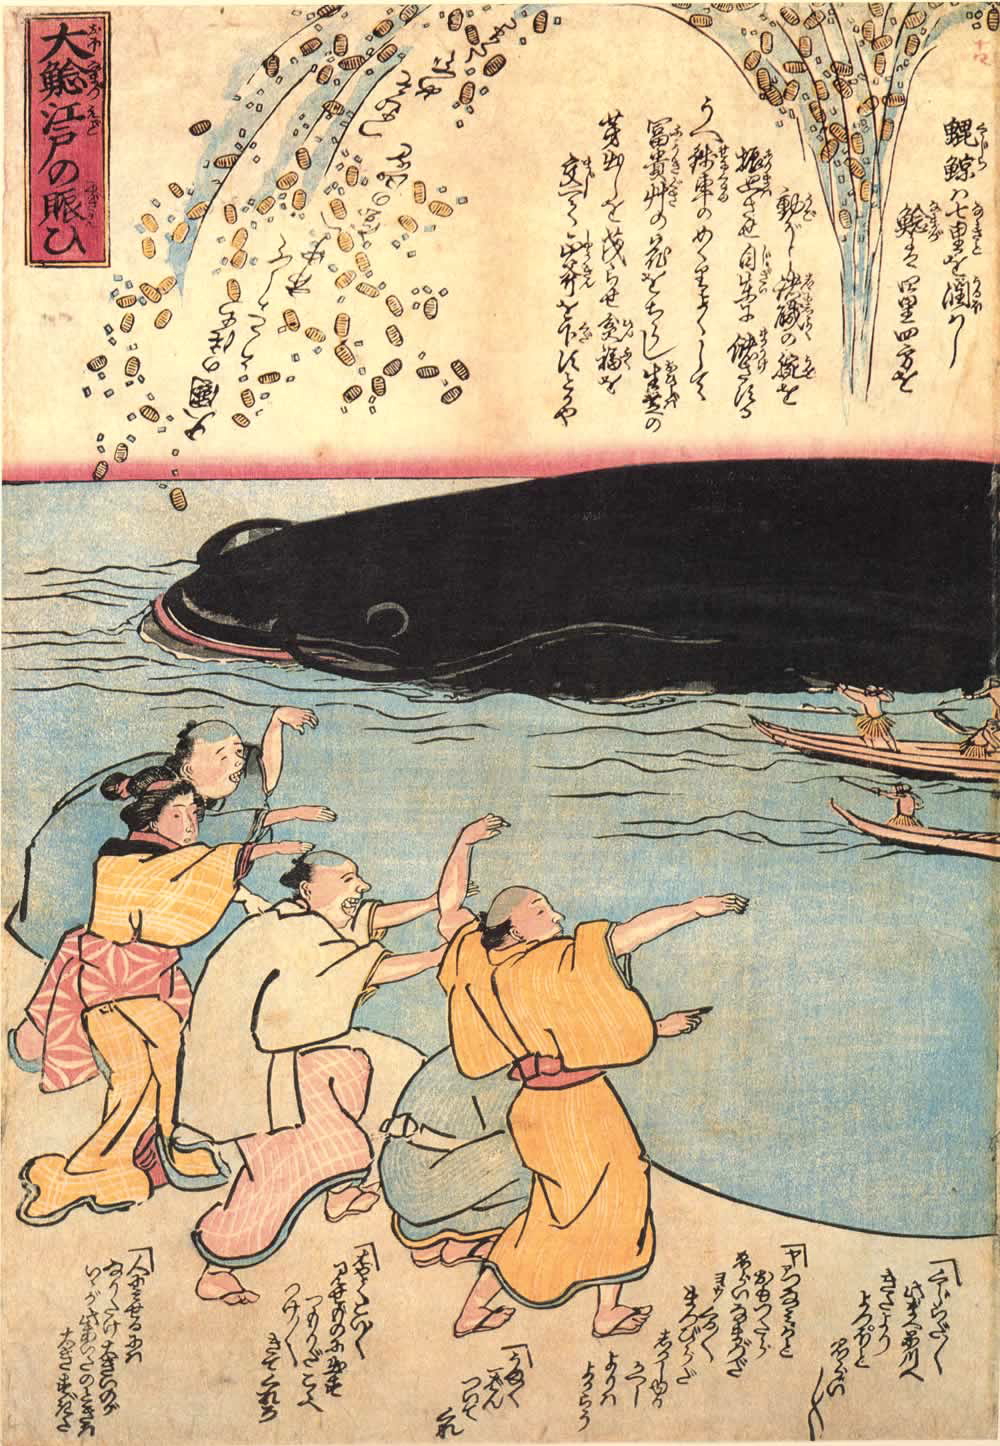 namazu-e Japanese catfish disaster prints